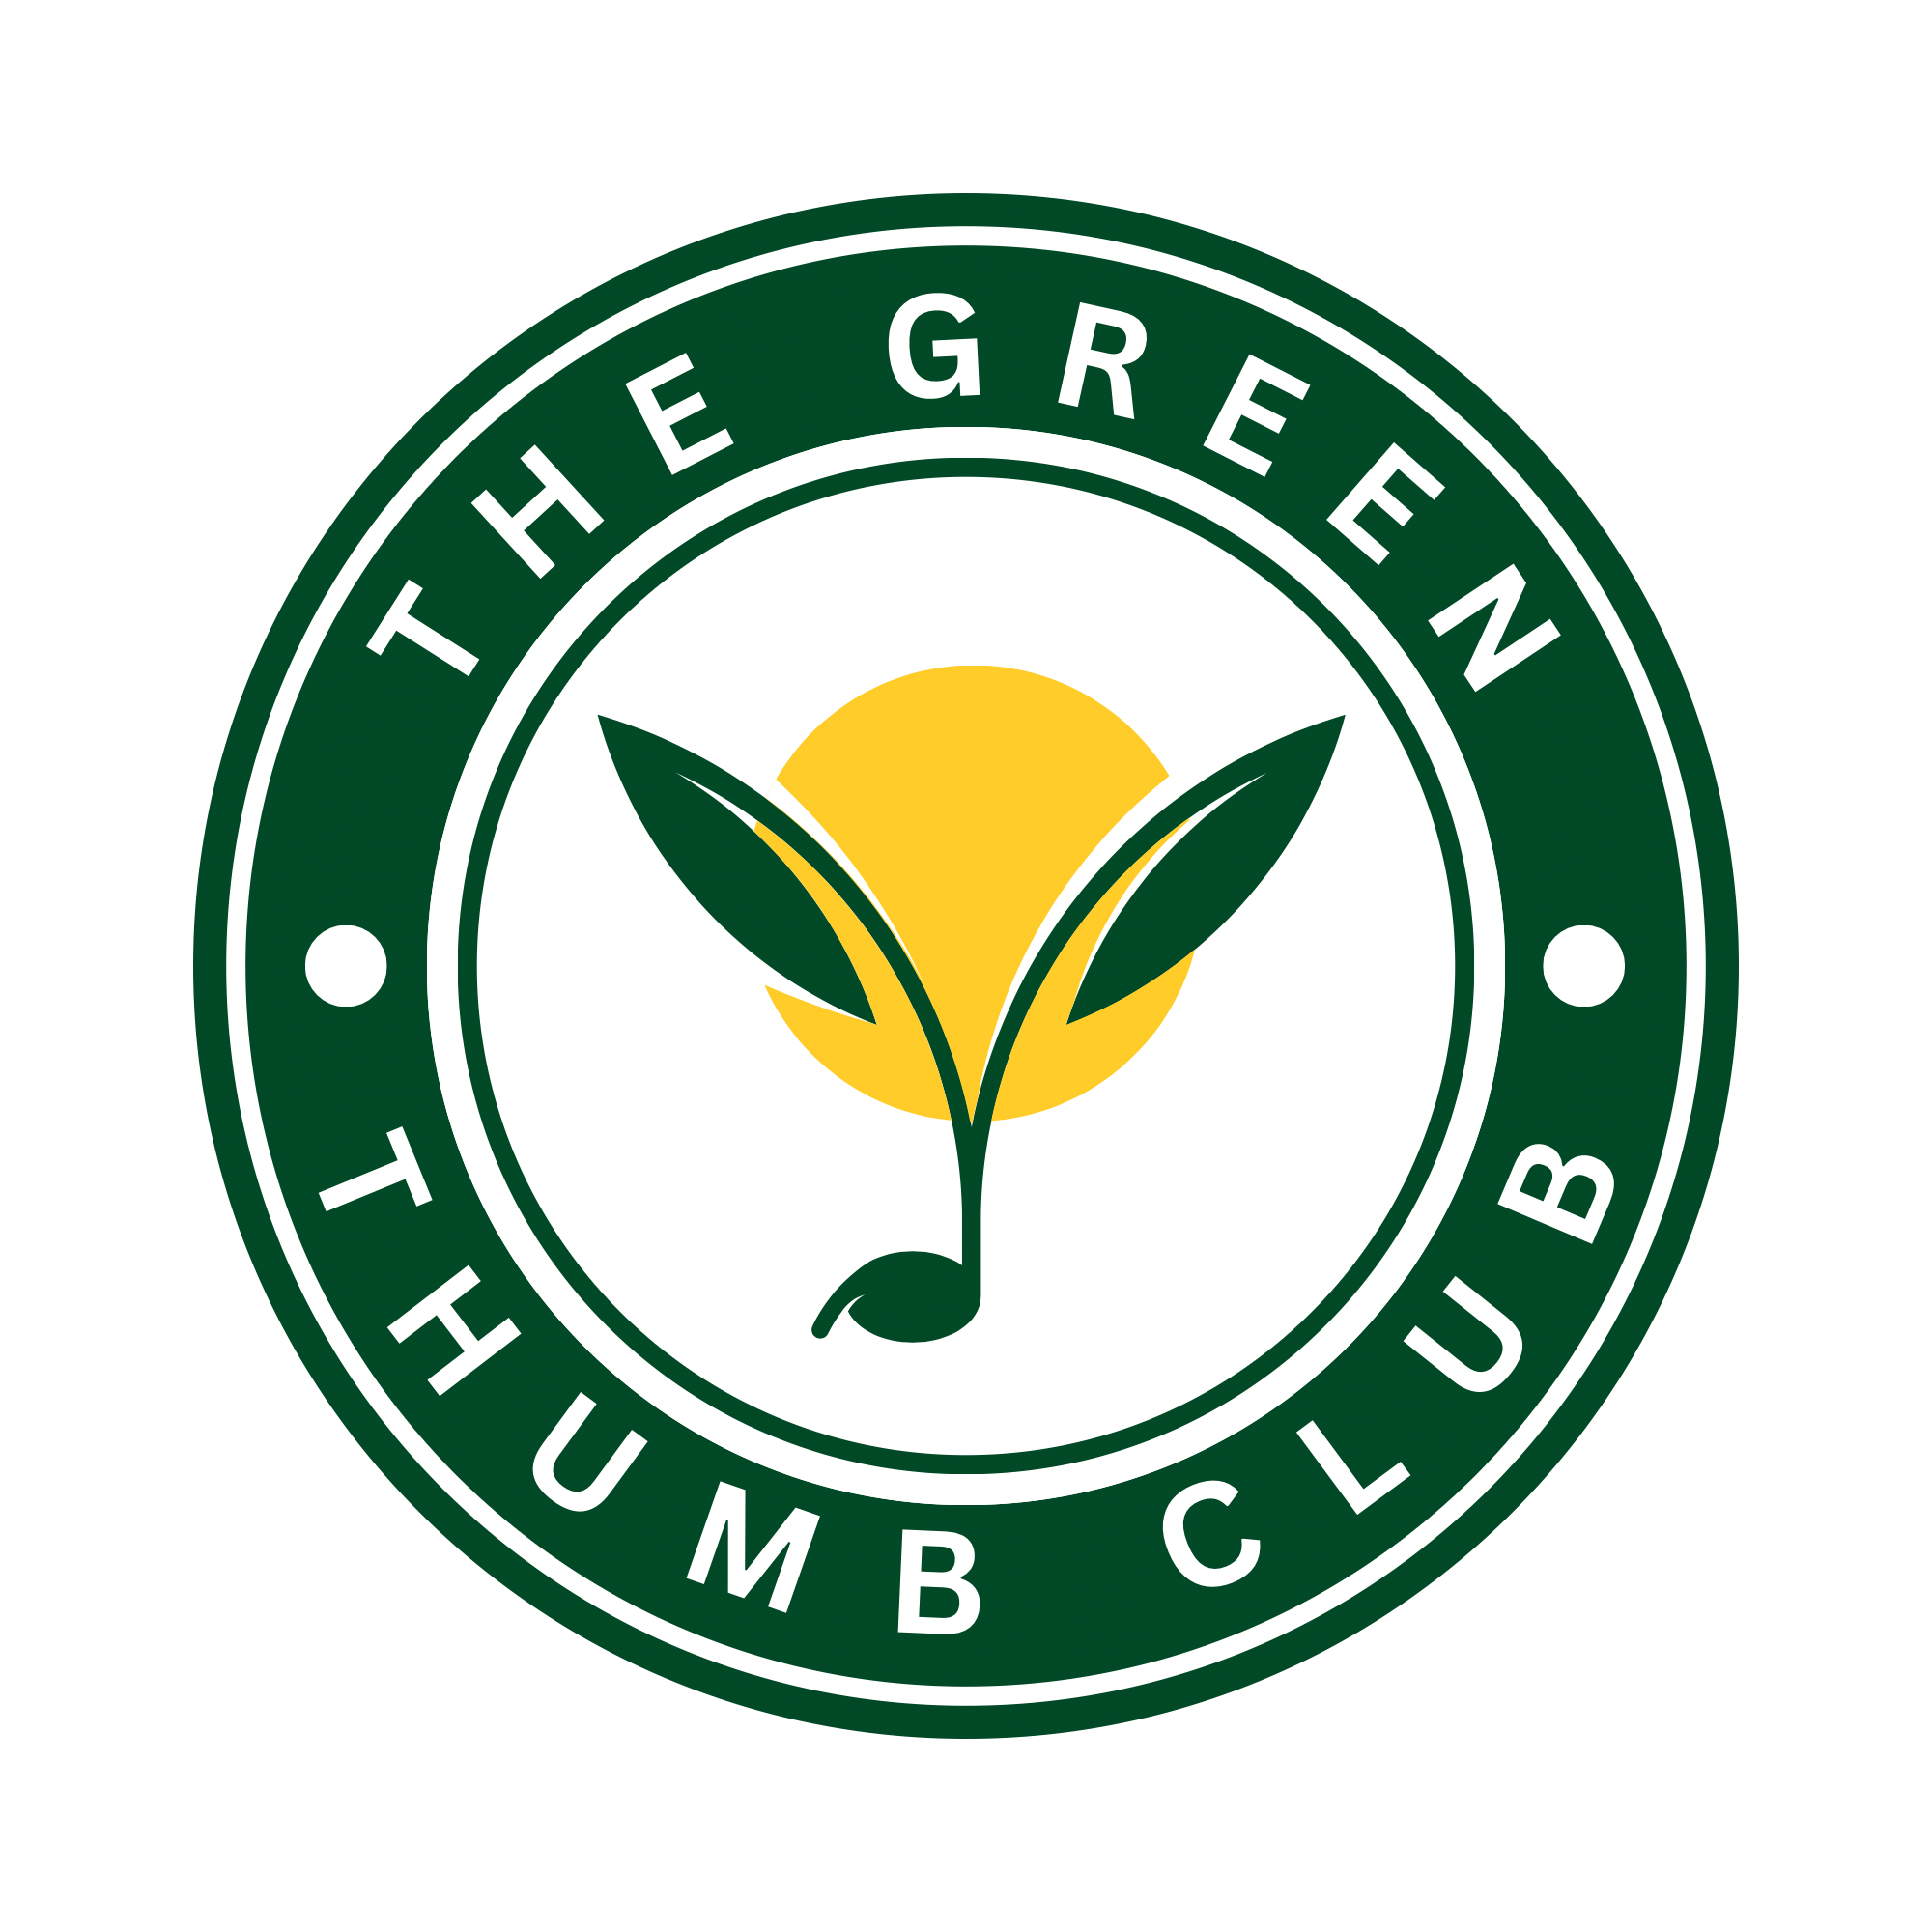 The Green Thumb Club